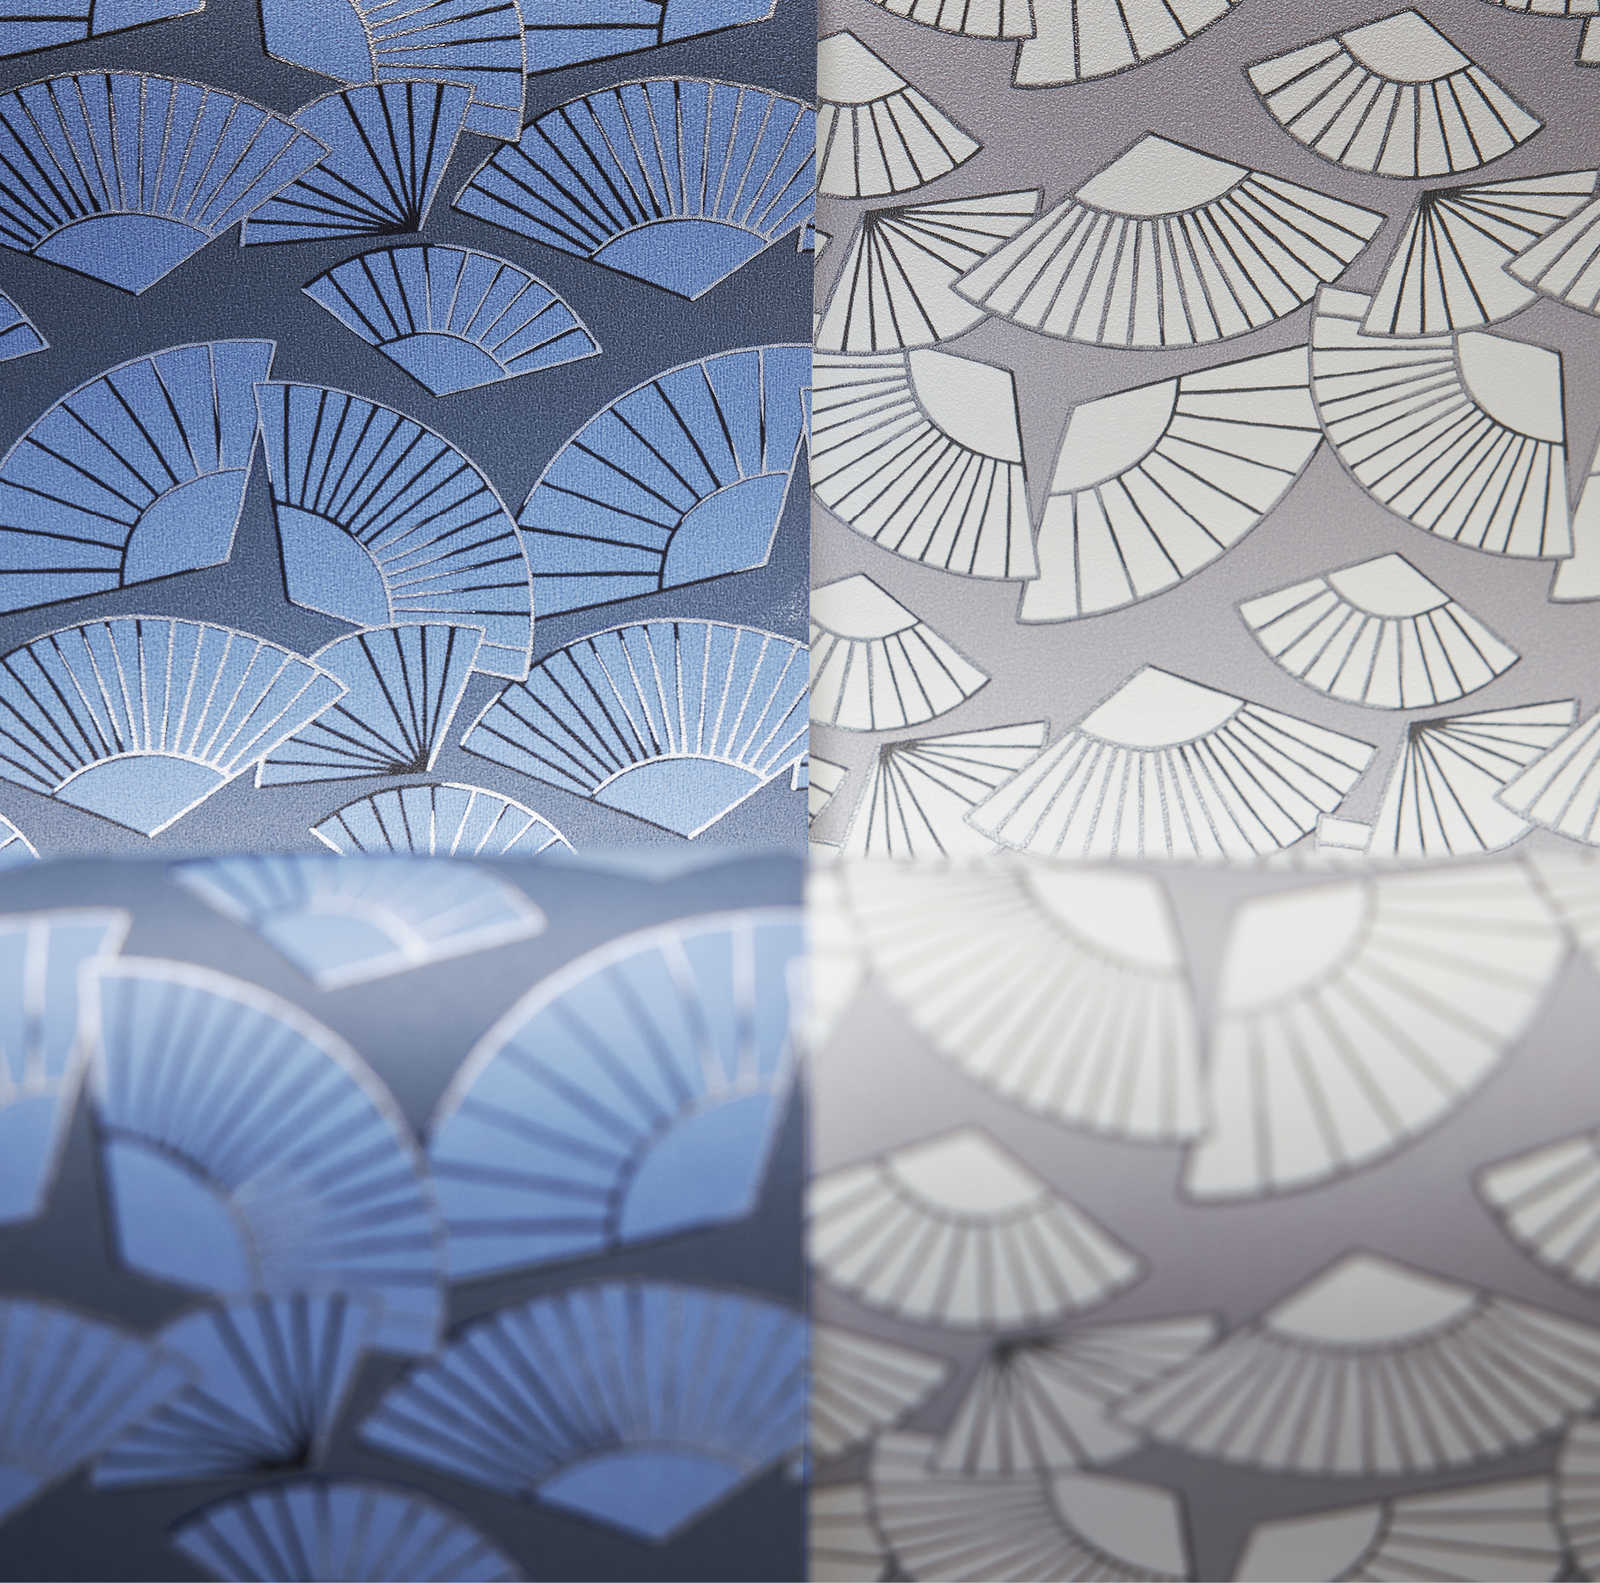             Wallpaper Karl LAGERFELD fan design - Blue, Metallic
        